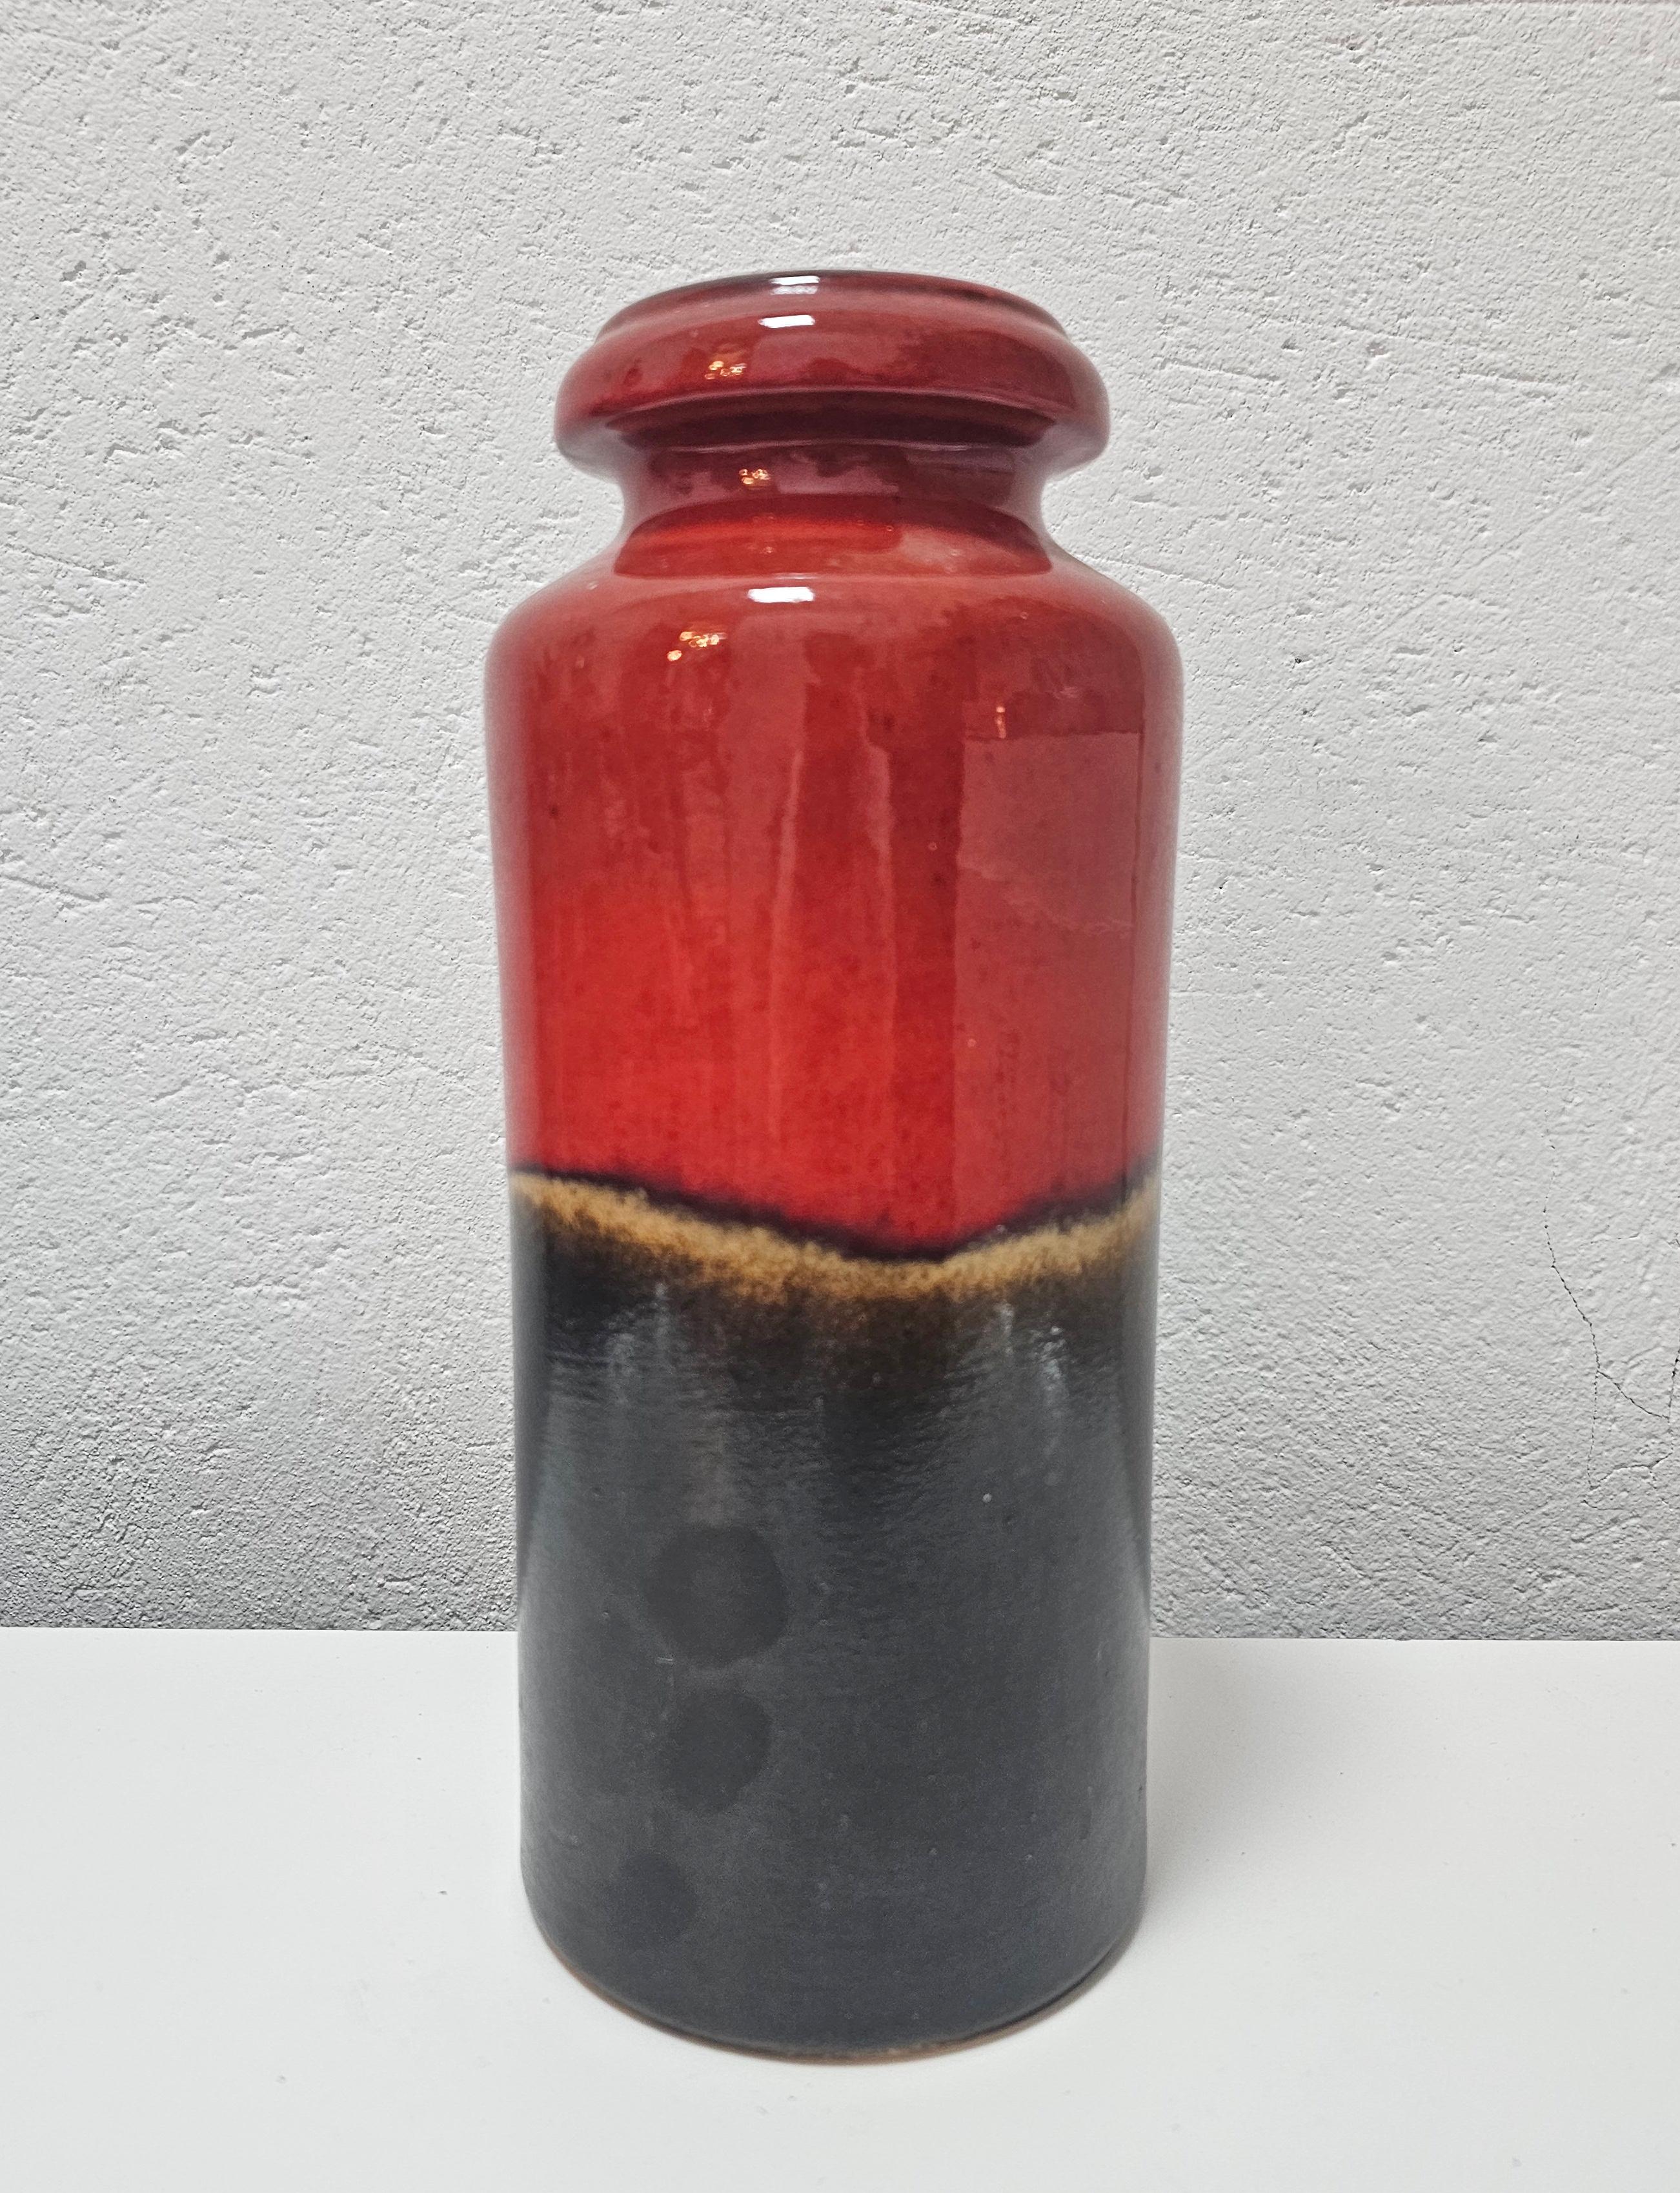 In diesem Angebot finden Sie eine seltene Vintage Keramik Vase in Rot und Braun Glasur, hergestellt von Scheurich, Modell 517-30. Die kultige westdeutsche Keramik ist in perfektem Vintage-Zustand, ohne Schäden oder Kratzer. Die Vase ist signiert und